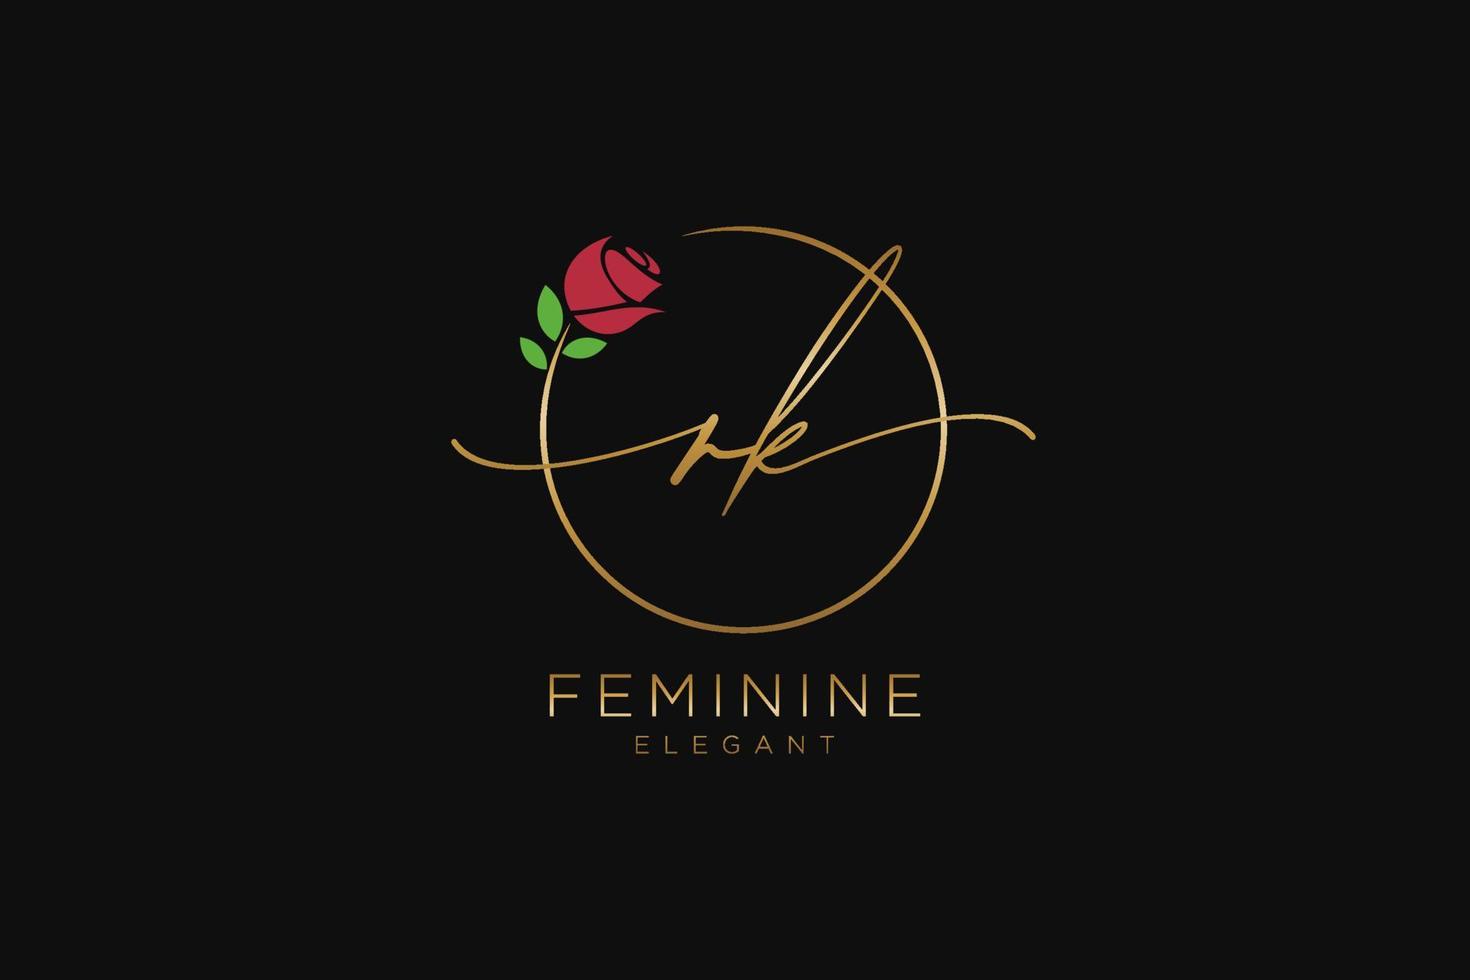 monogramme de beauté du logo féminin initial rk et design élégant du logo, logo manuscrit de la signature initiale, mariage, mode, floral et botanique avec modèle créatif. vecteur